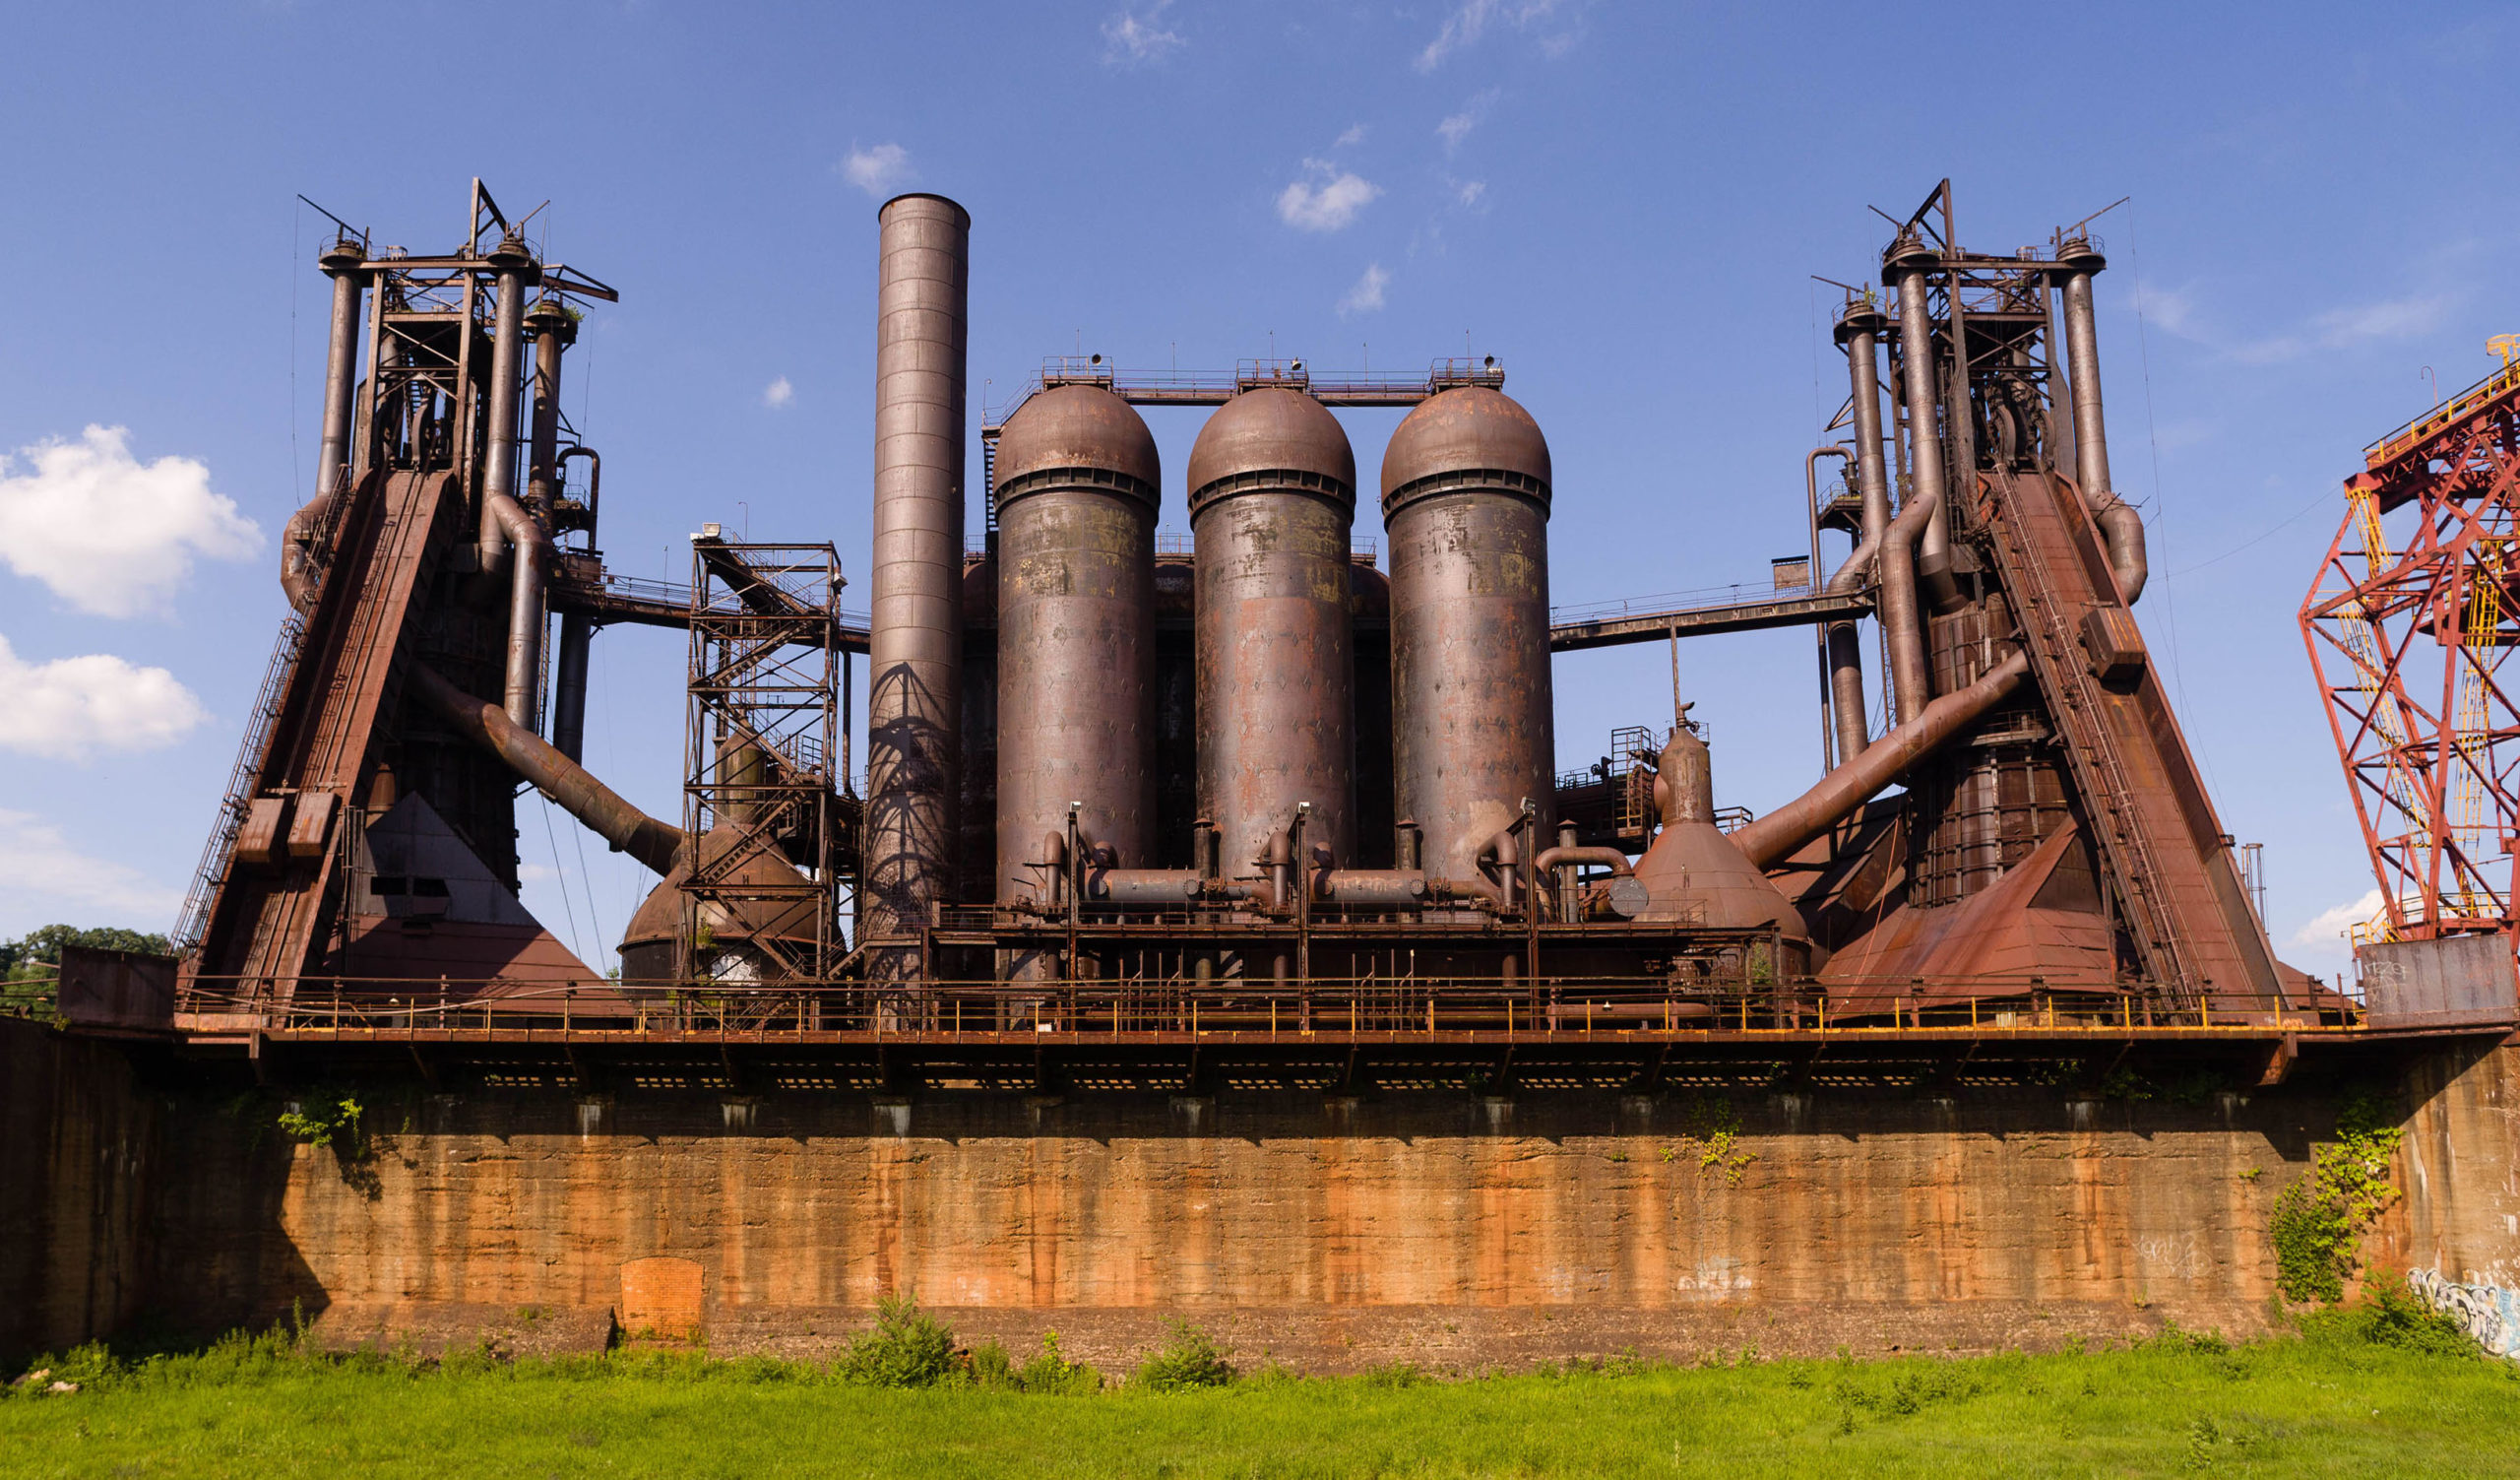 Alles über das Erbe der Stahlindustrie von Pittsburgh erfährt man bei einer Tour durch den Carrie-Hochofen von Rivers of Steel, etwa 20 Minuten Fahrtzeit außerhalb der Innenstadt. 